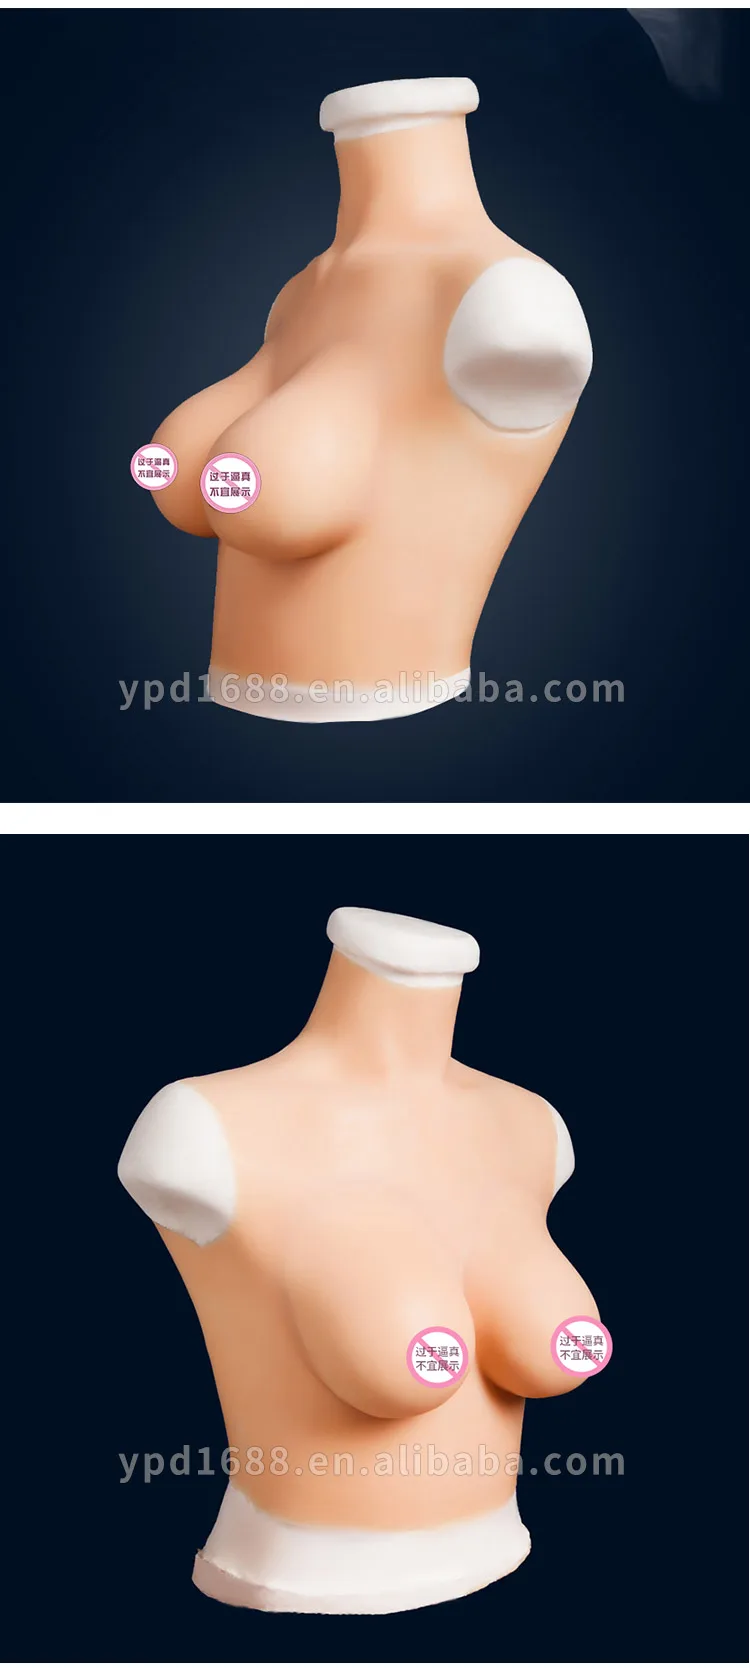 форма силиконовой груди фото 101